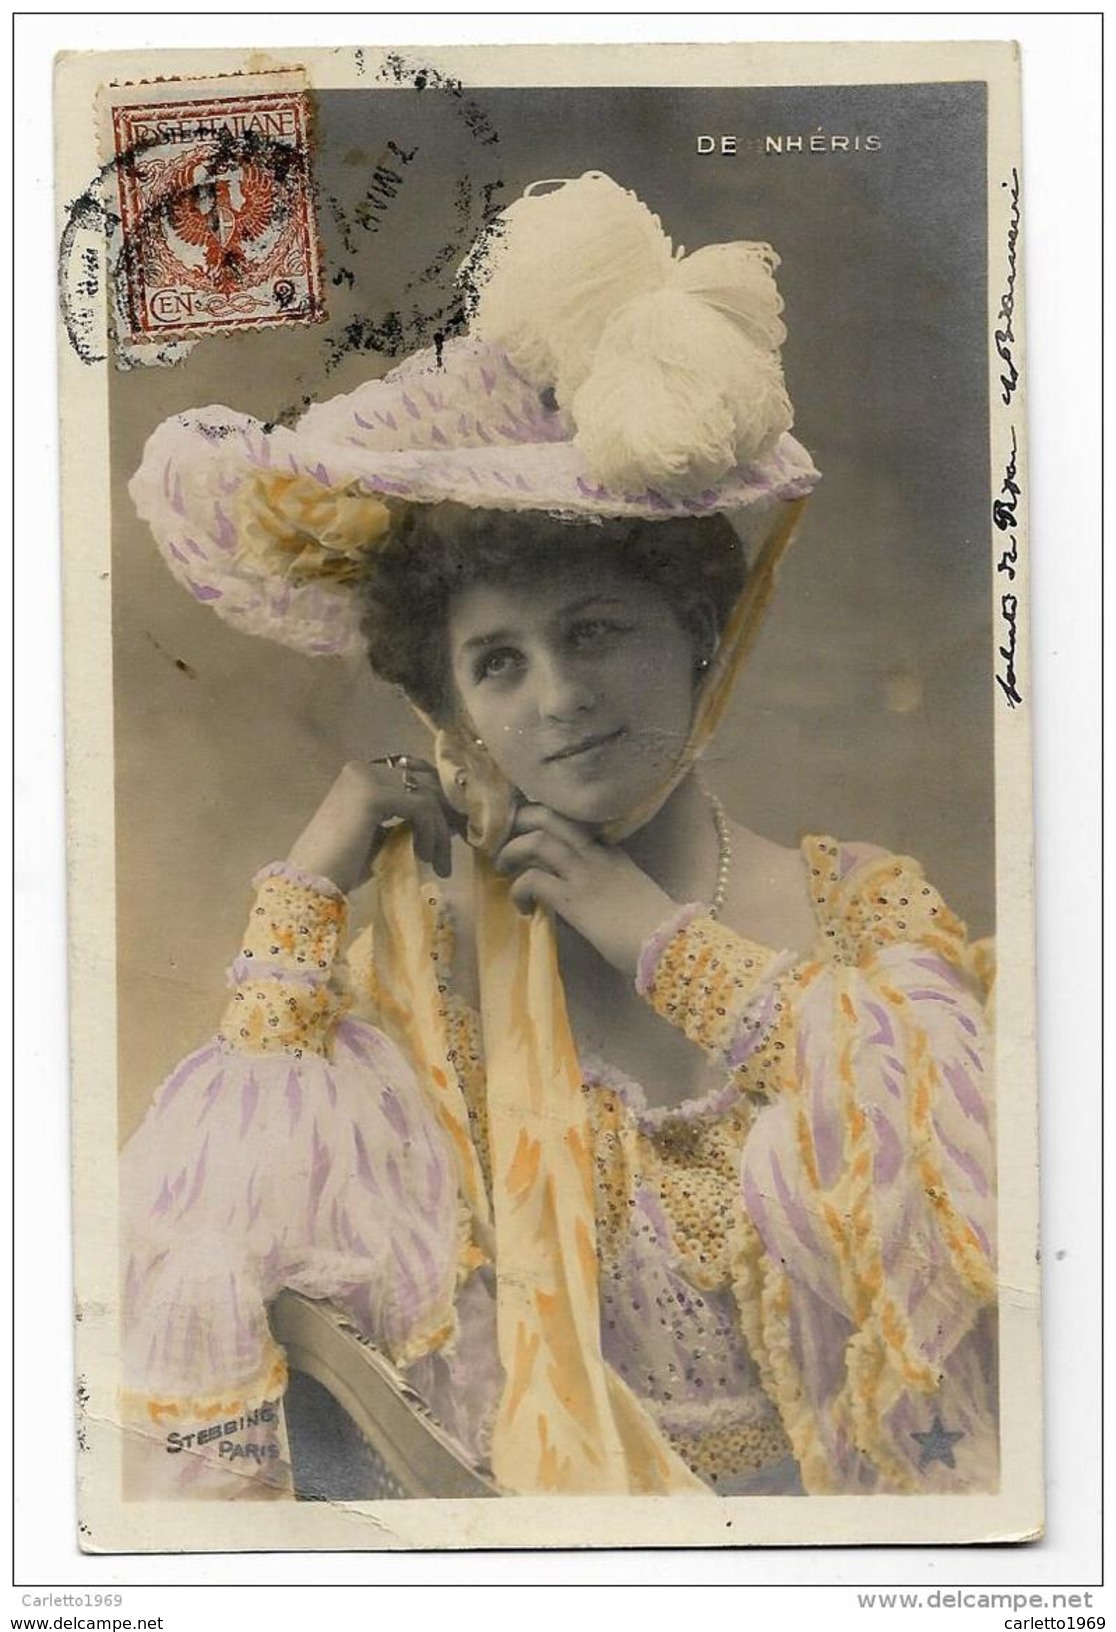 DE NHERIS STEBBING  PARIS  VIAGGIATA FP 1905 - Berühmt Frauen